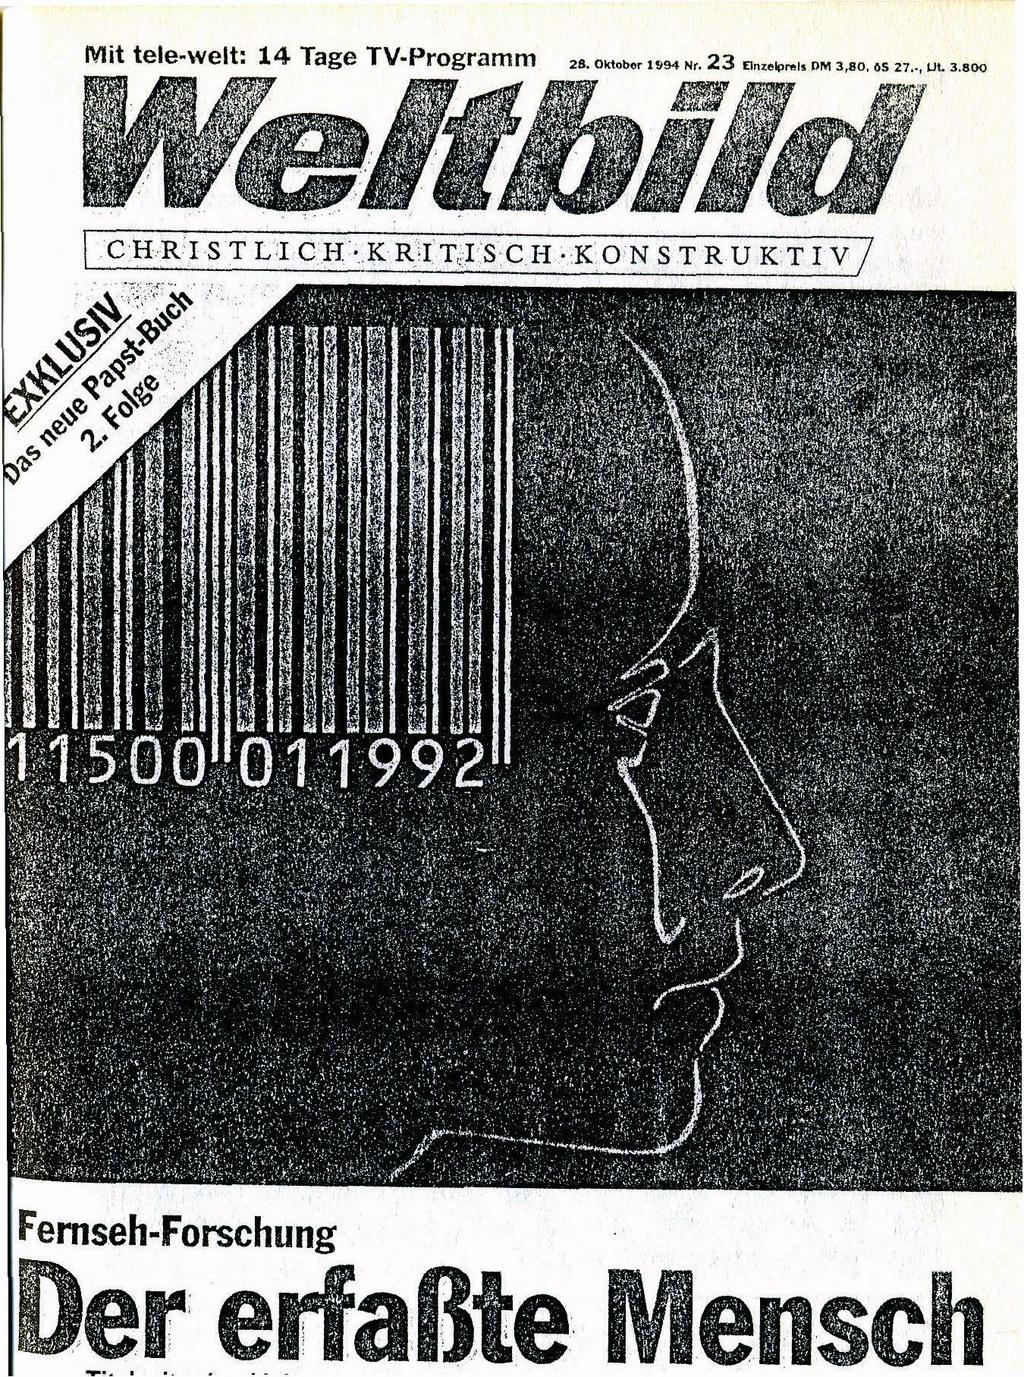 Zmenšená titulní strana (už jen podle jména) křesťanského časopisu Weltbild z 28. října 1994.